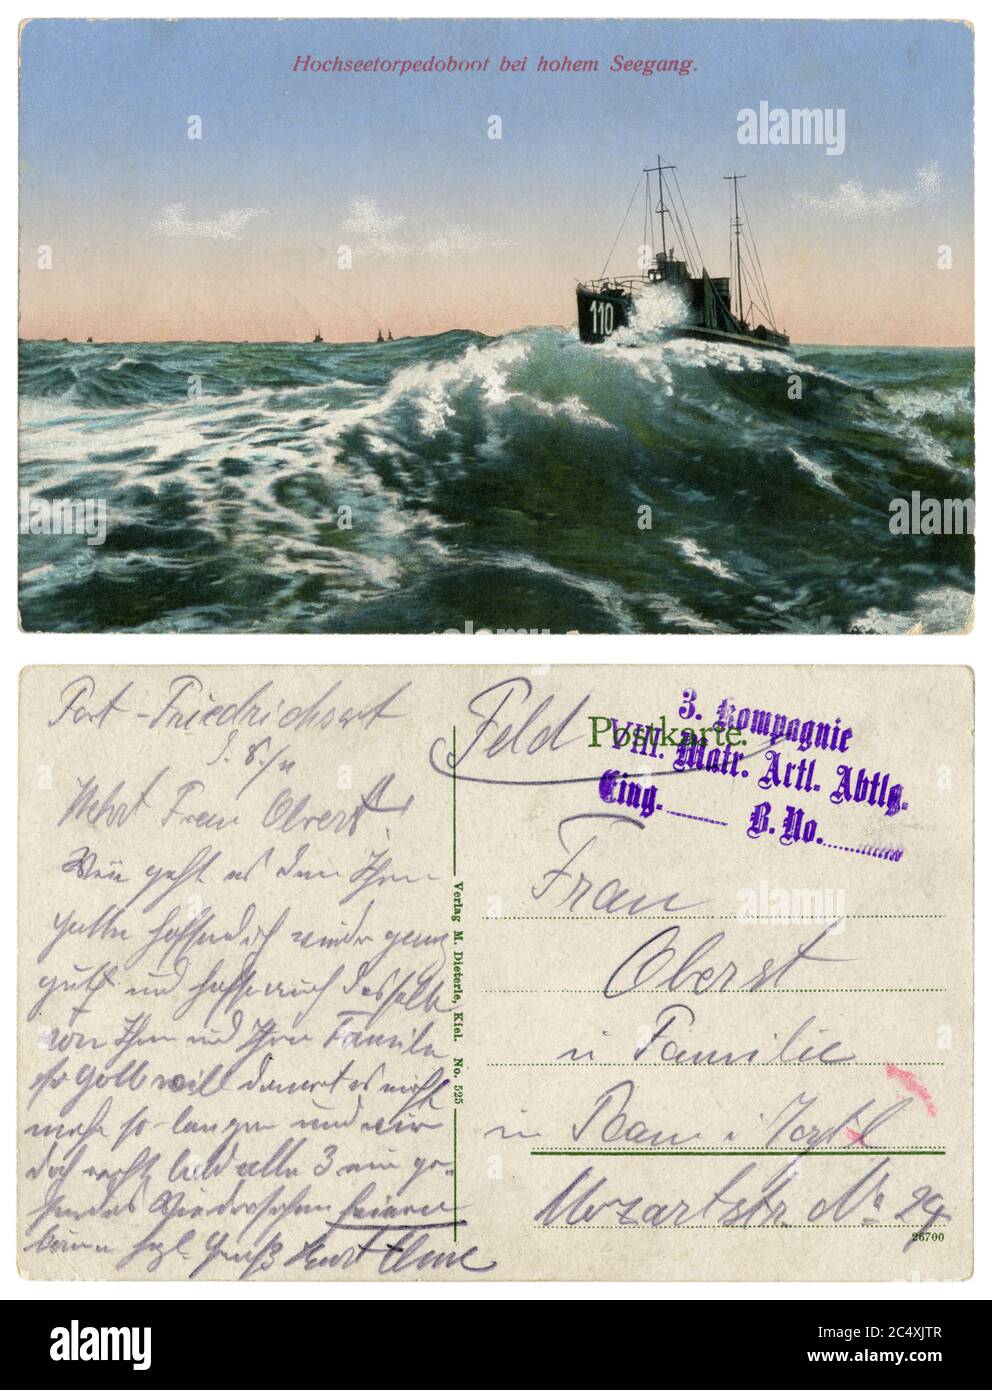 Cartolina fotografica colorata storica tedesca: Battello a siluro n° 110 su un'onda alta in mare aperto, Marina imperiale tedesca, guerra mondiale 1 1914-18, inverso Foto Stock